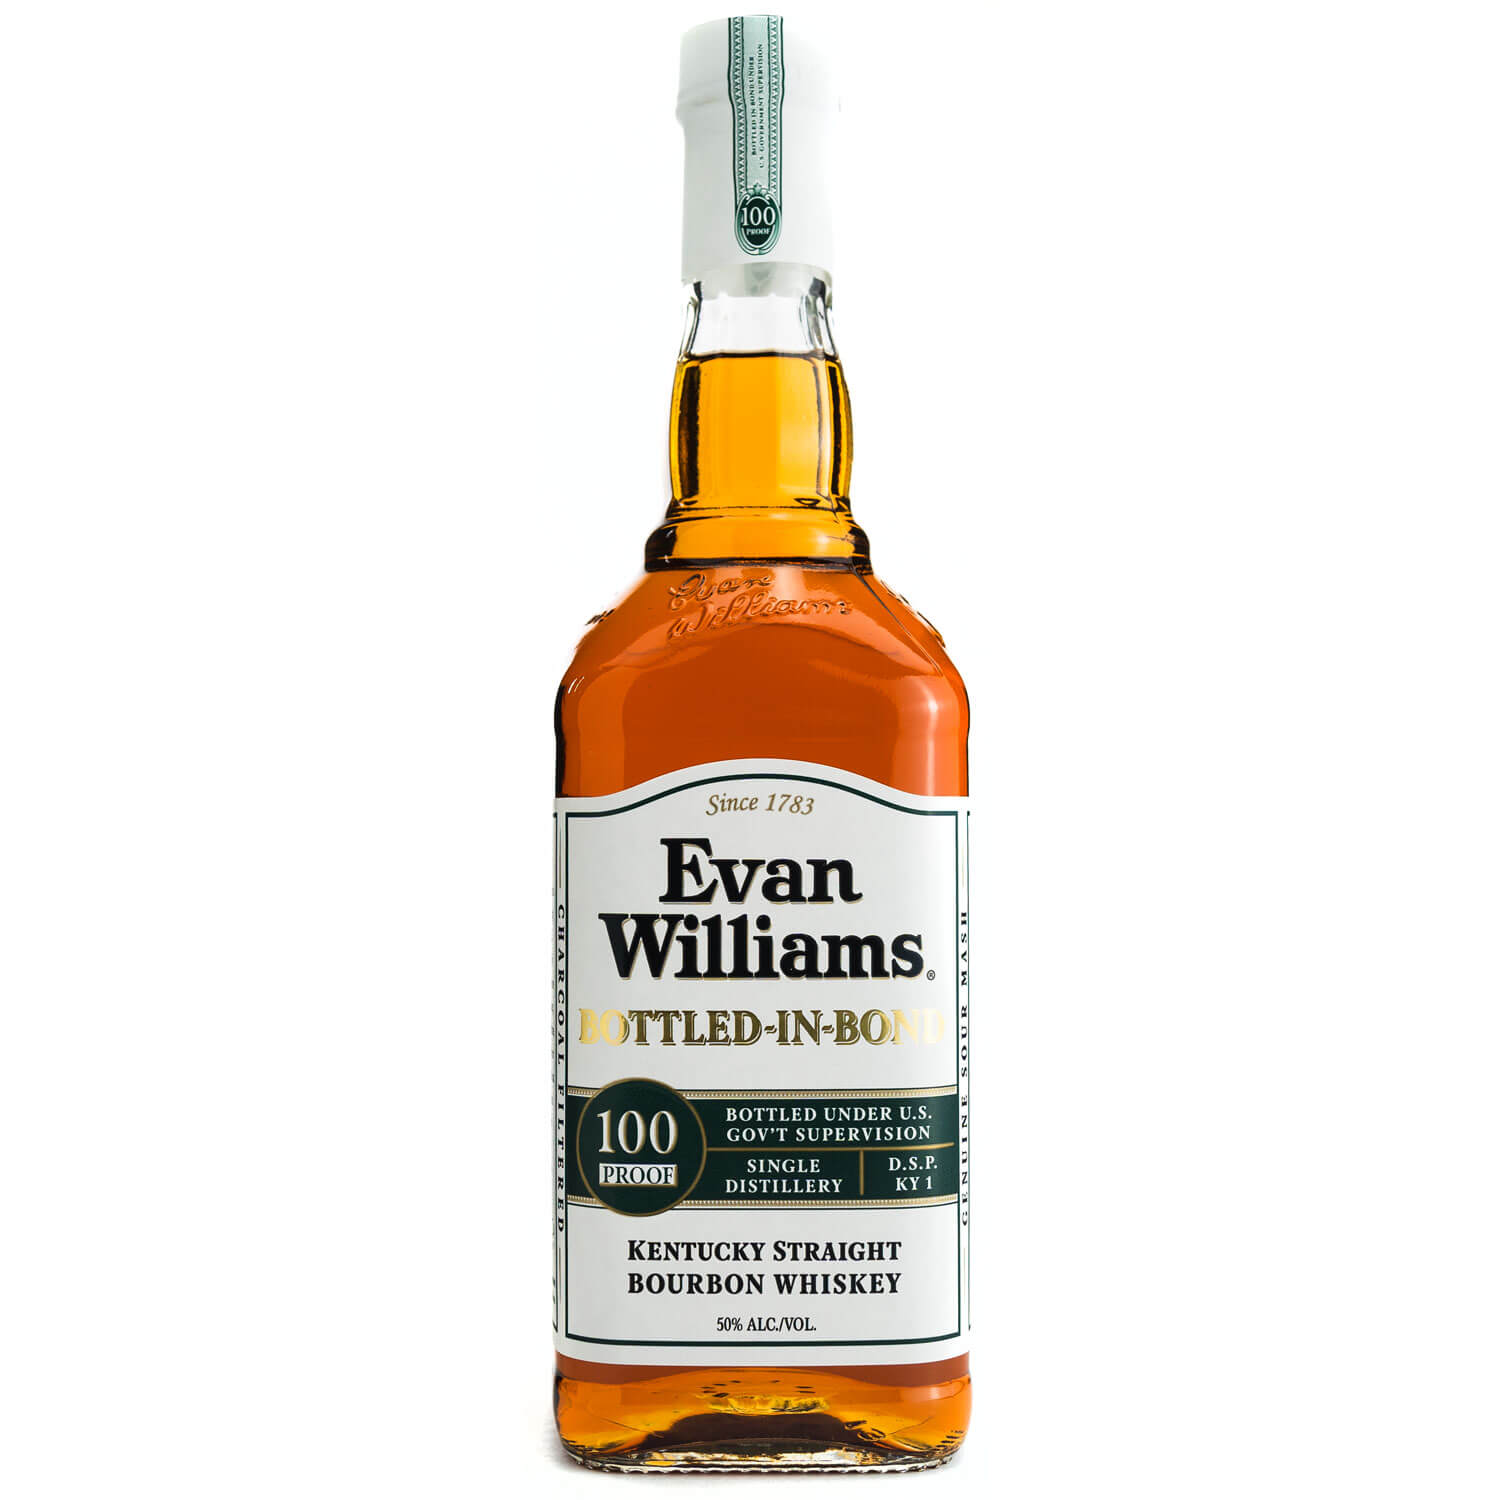 Evan Williams Bottled-in-Bond